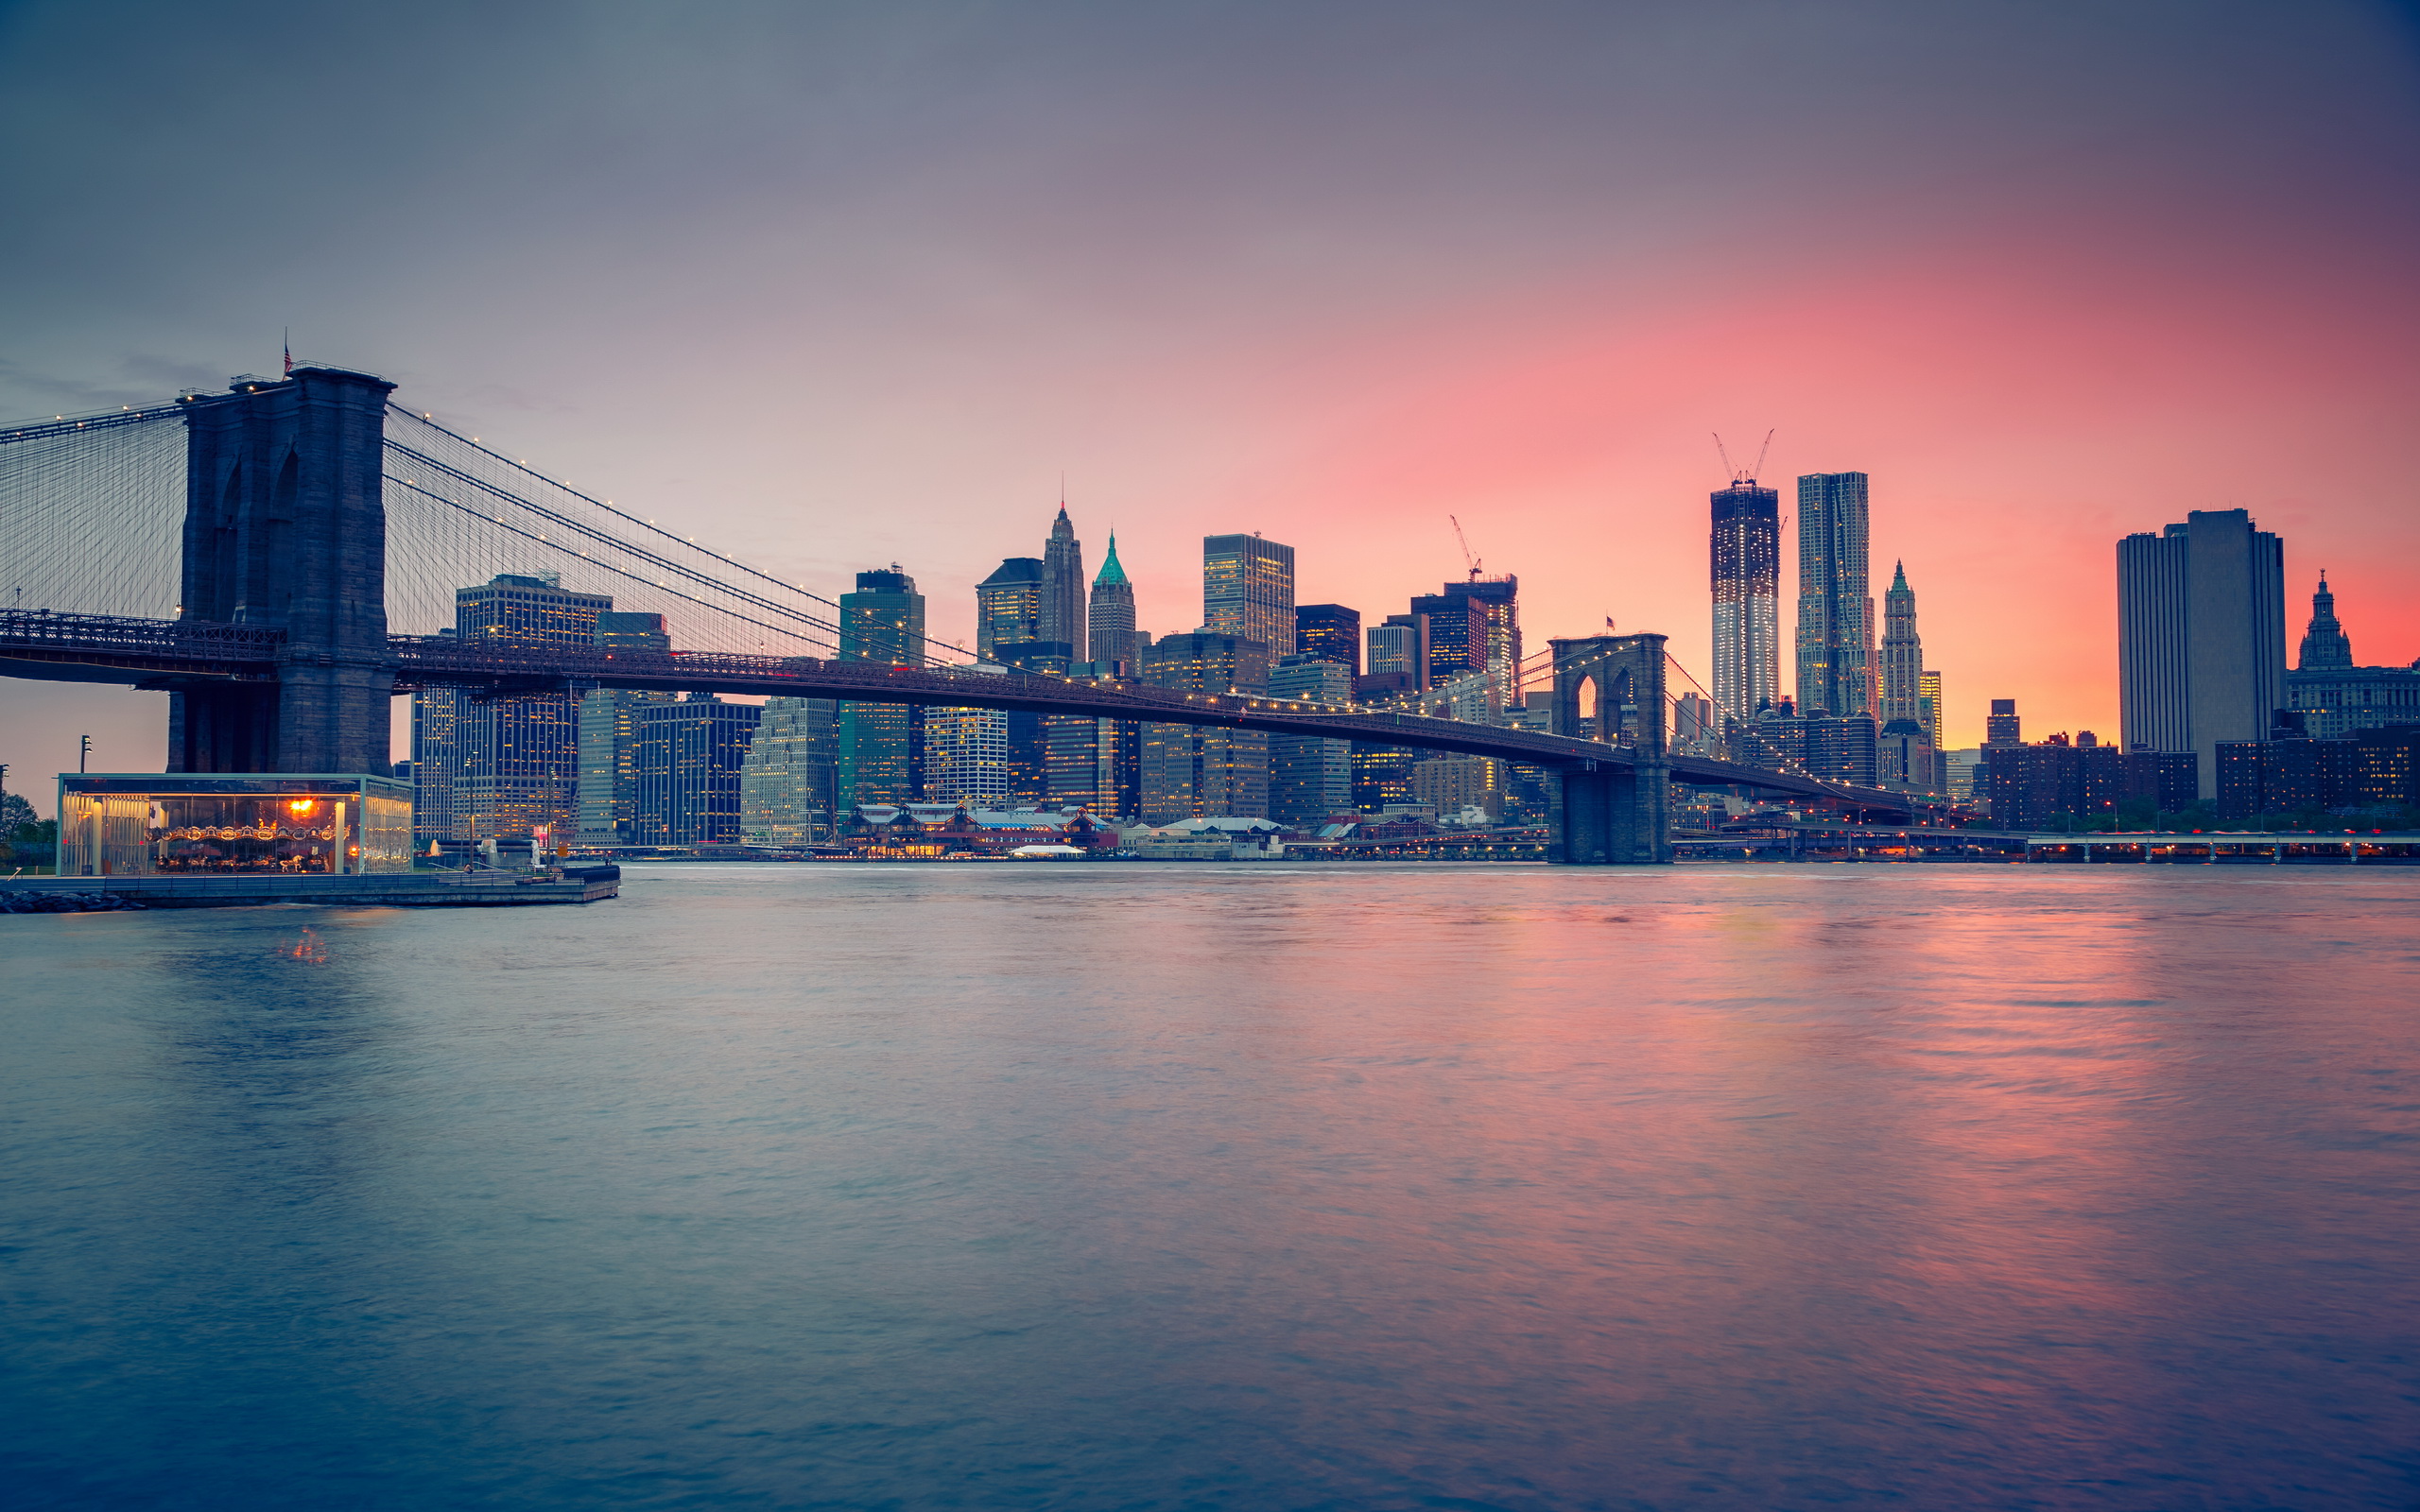 Brooklyn Bridge HD Wallpaper Background Image 2560x1600 ID